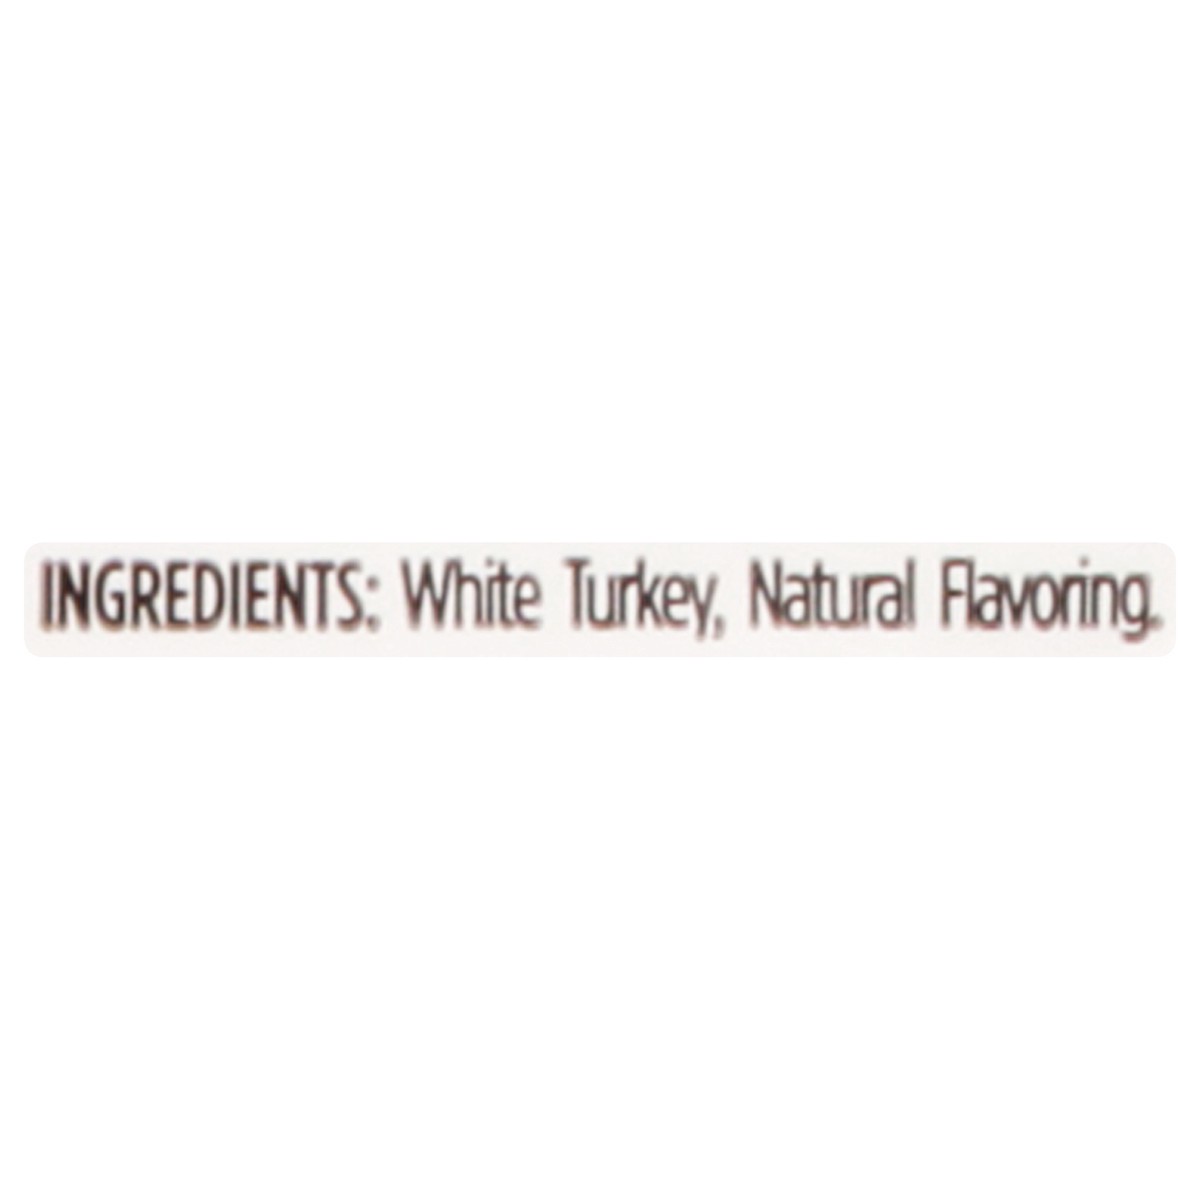 slide 3 of 10, Honeysuckle White 97% Fat Free Ground White Turkey Tray, 1 lb., 16 oz